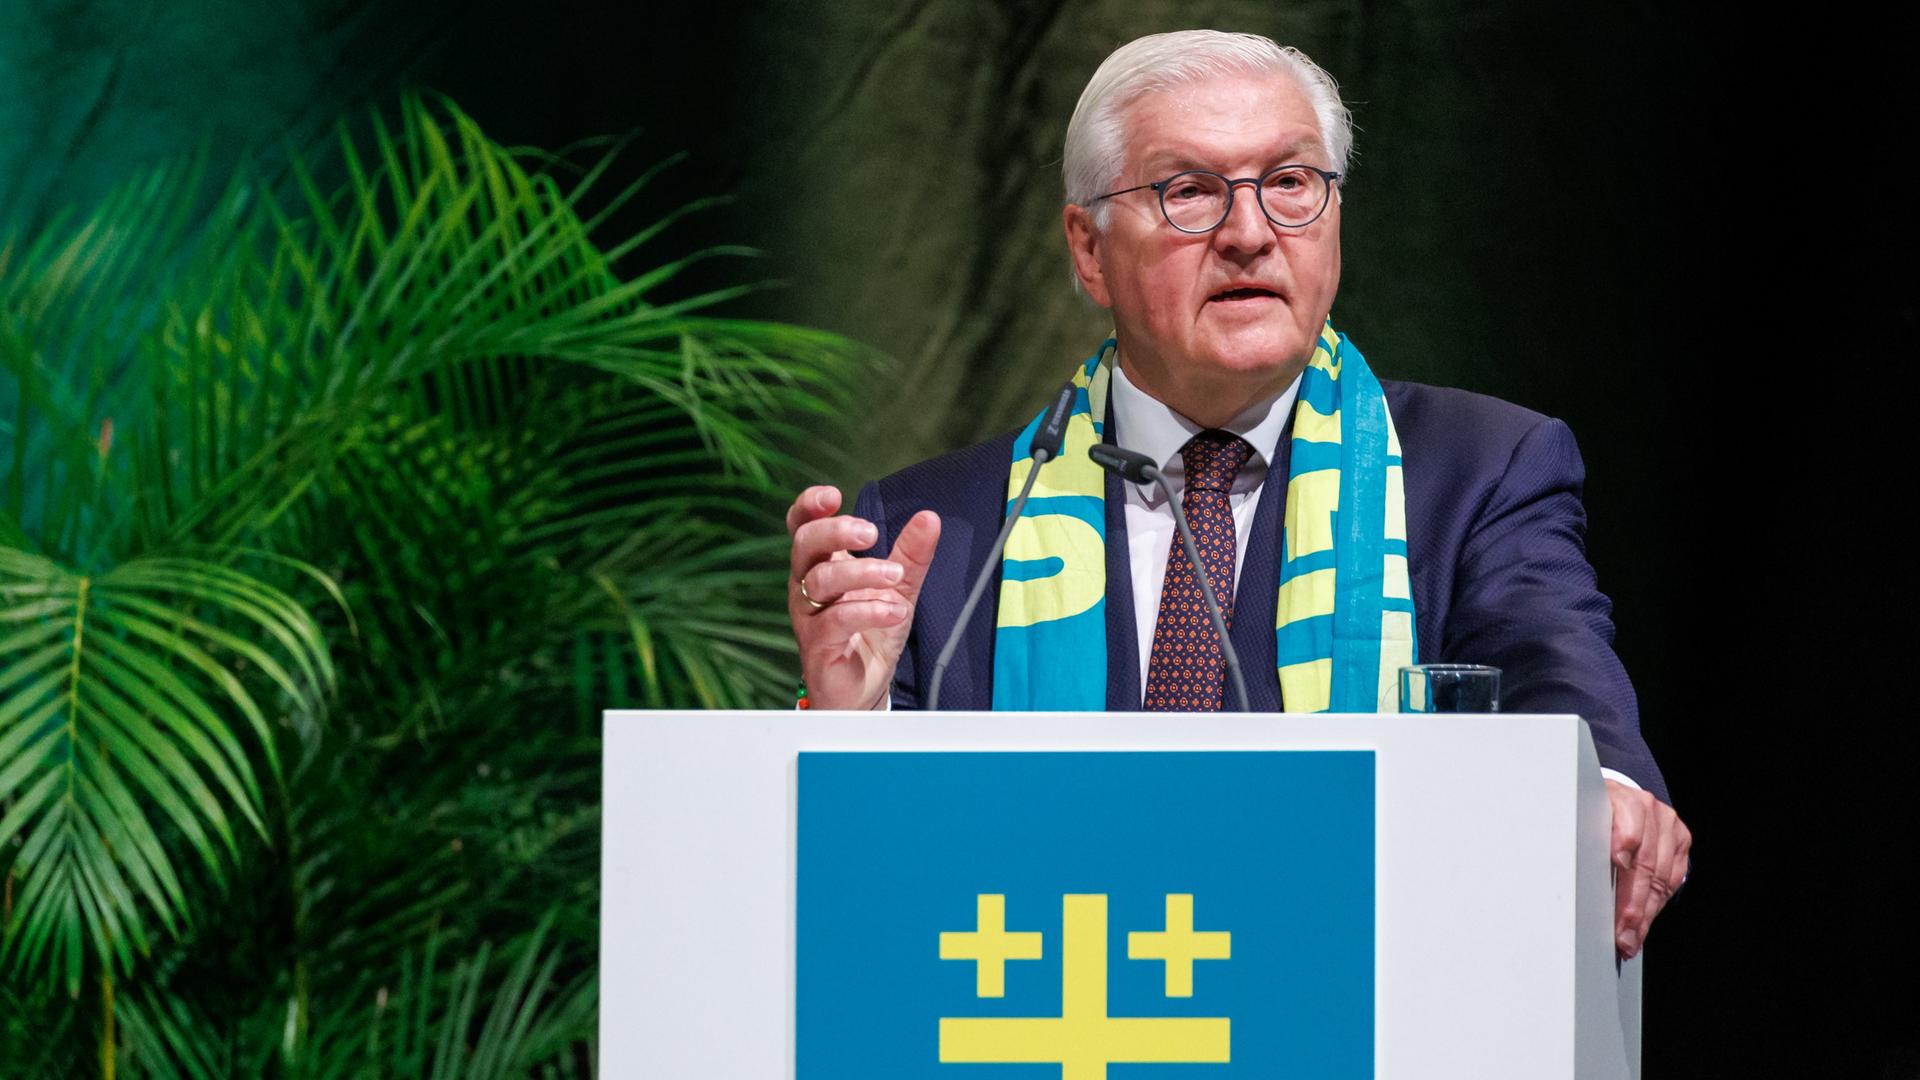 Evangelischer Kirchentag - Bundespräsident Steinmeier ruft zum Einsatz für die Demokratie auf